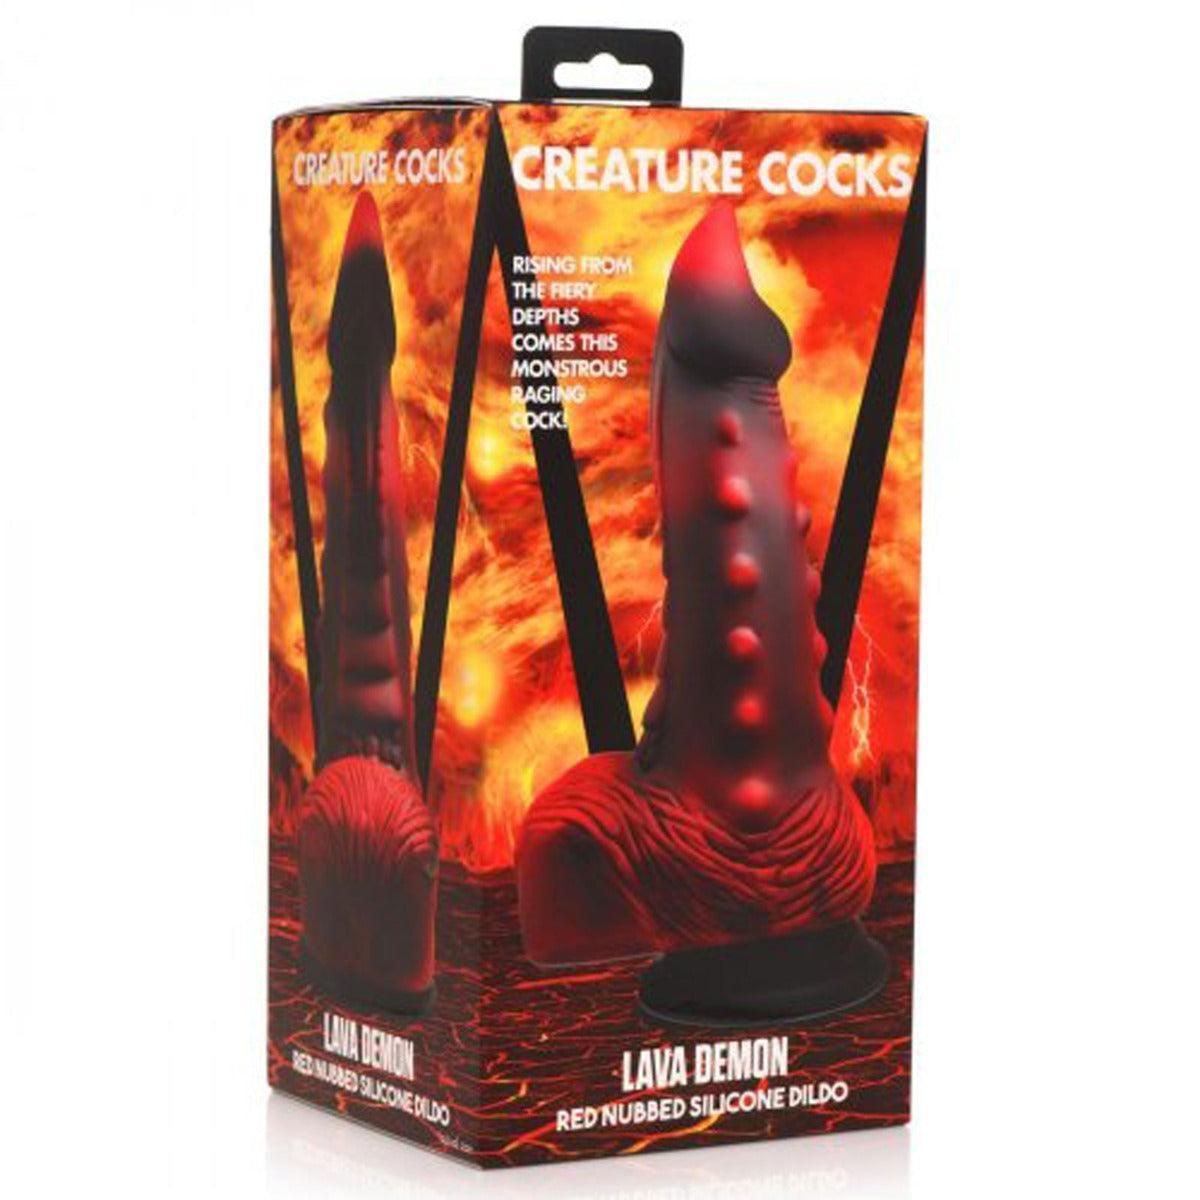 Creature Cocks Lava Demon Thick Nubbed Red and Black Silicone Dildo